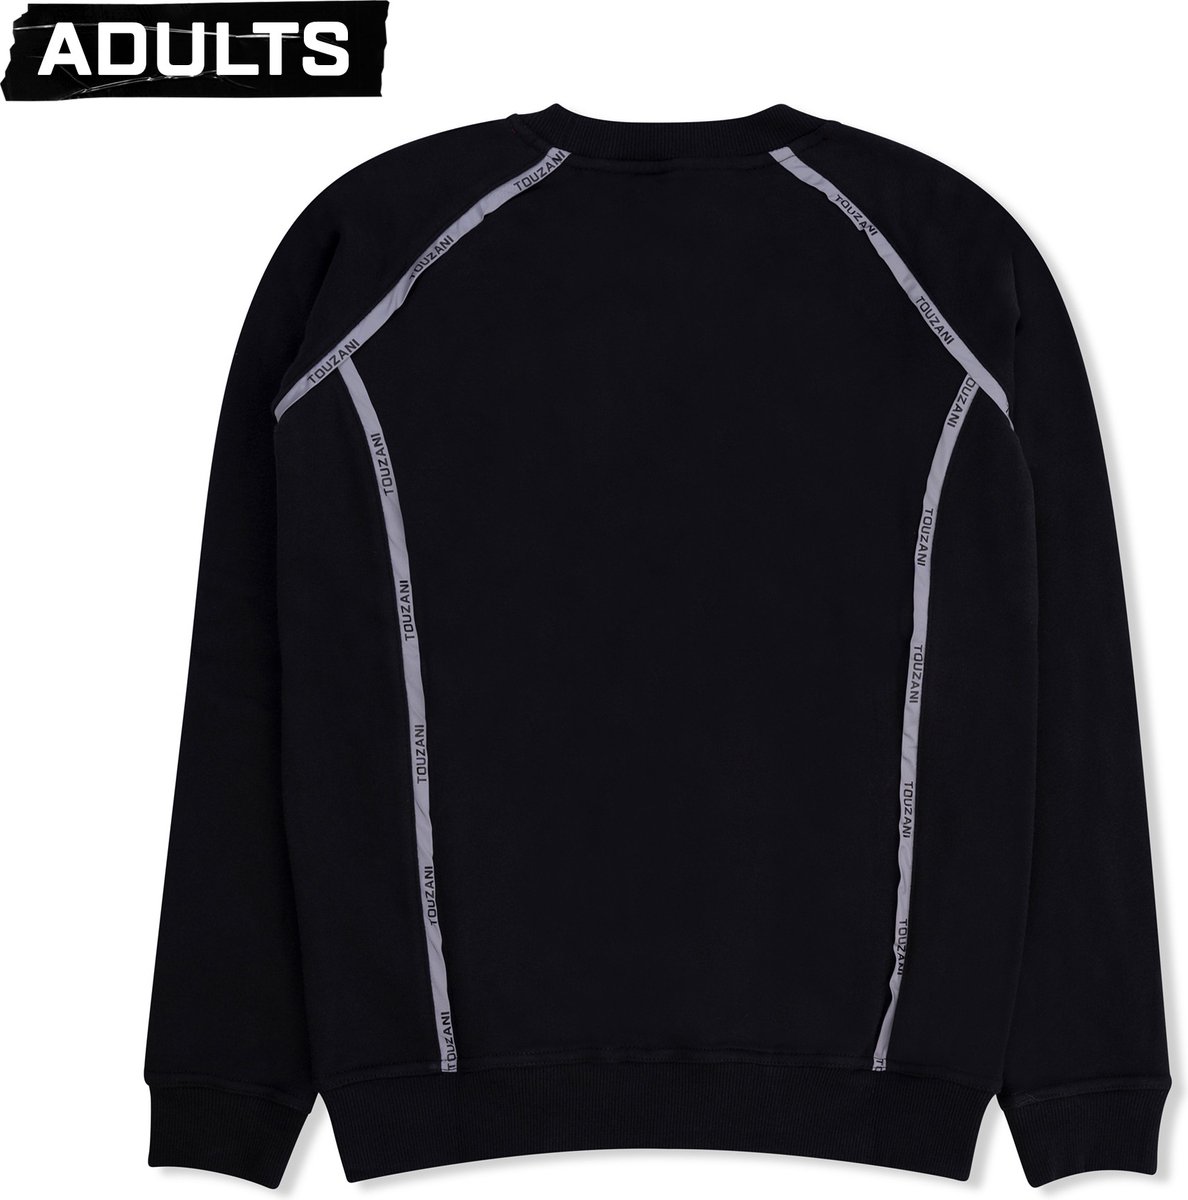 Touzani - Sweater - Matsuba ATW (M)